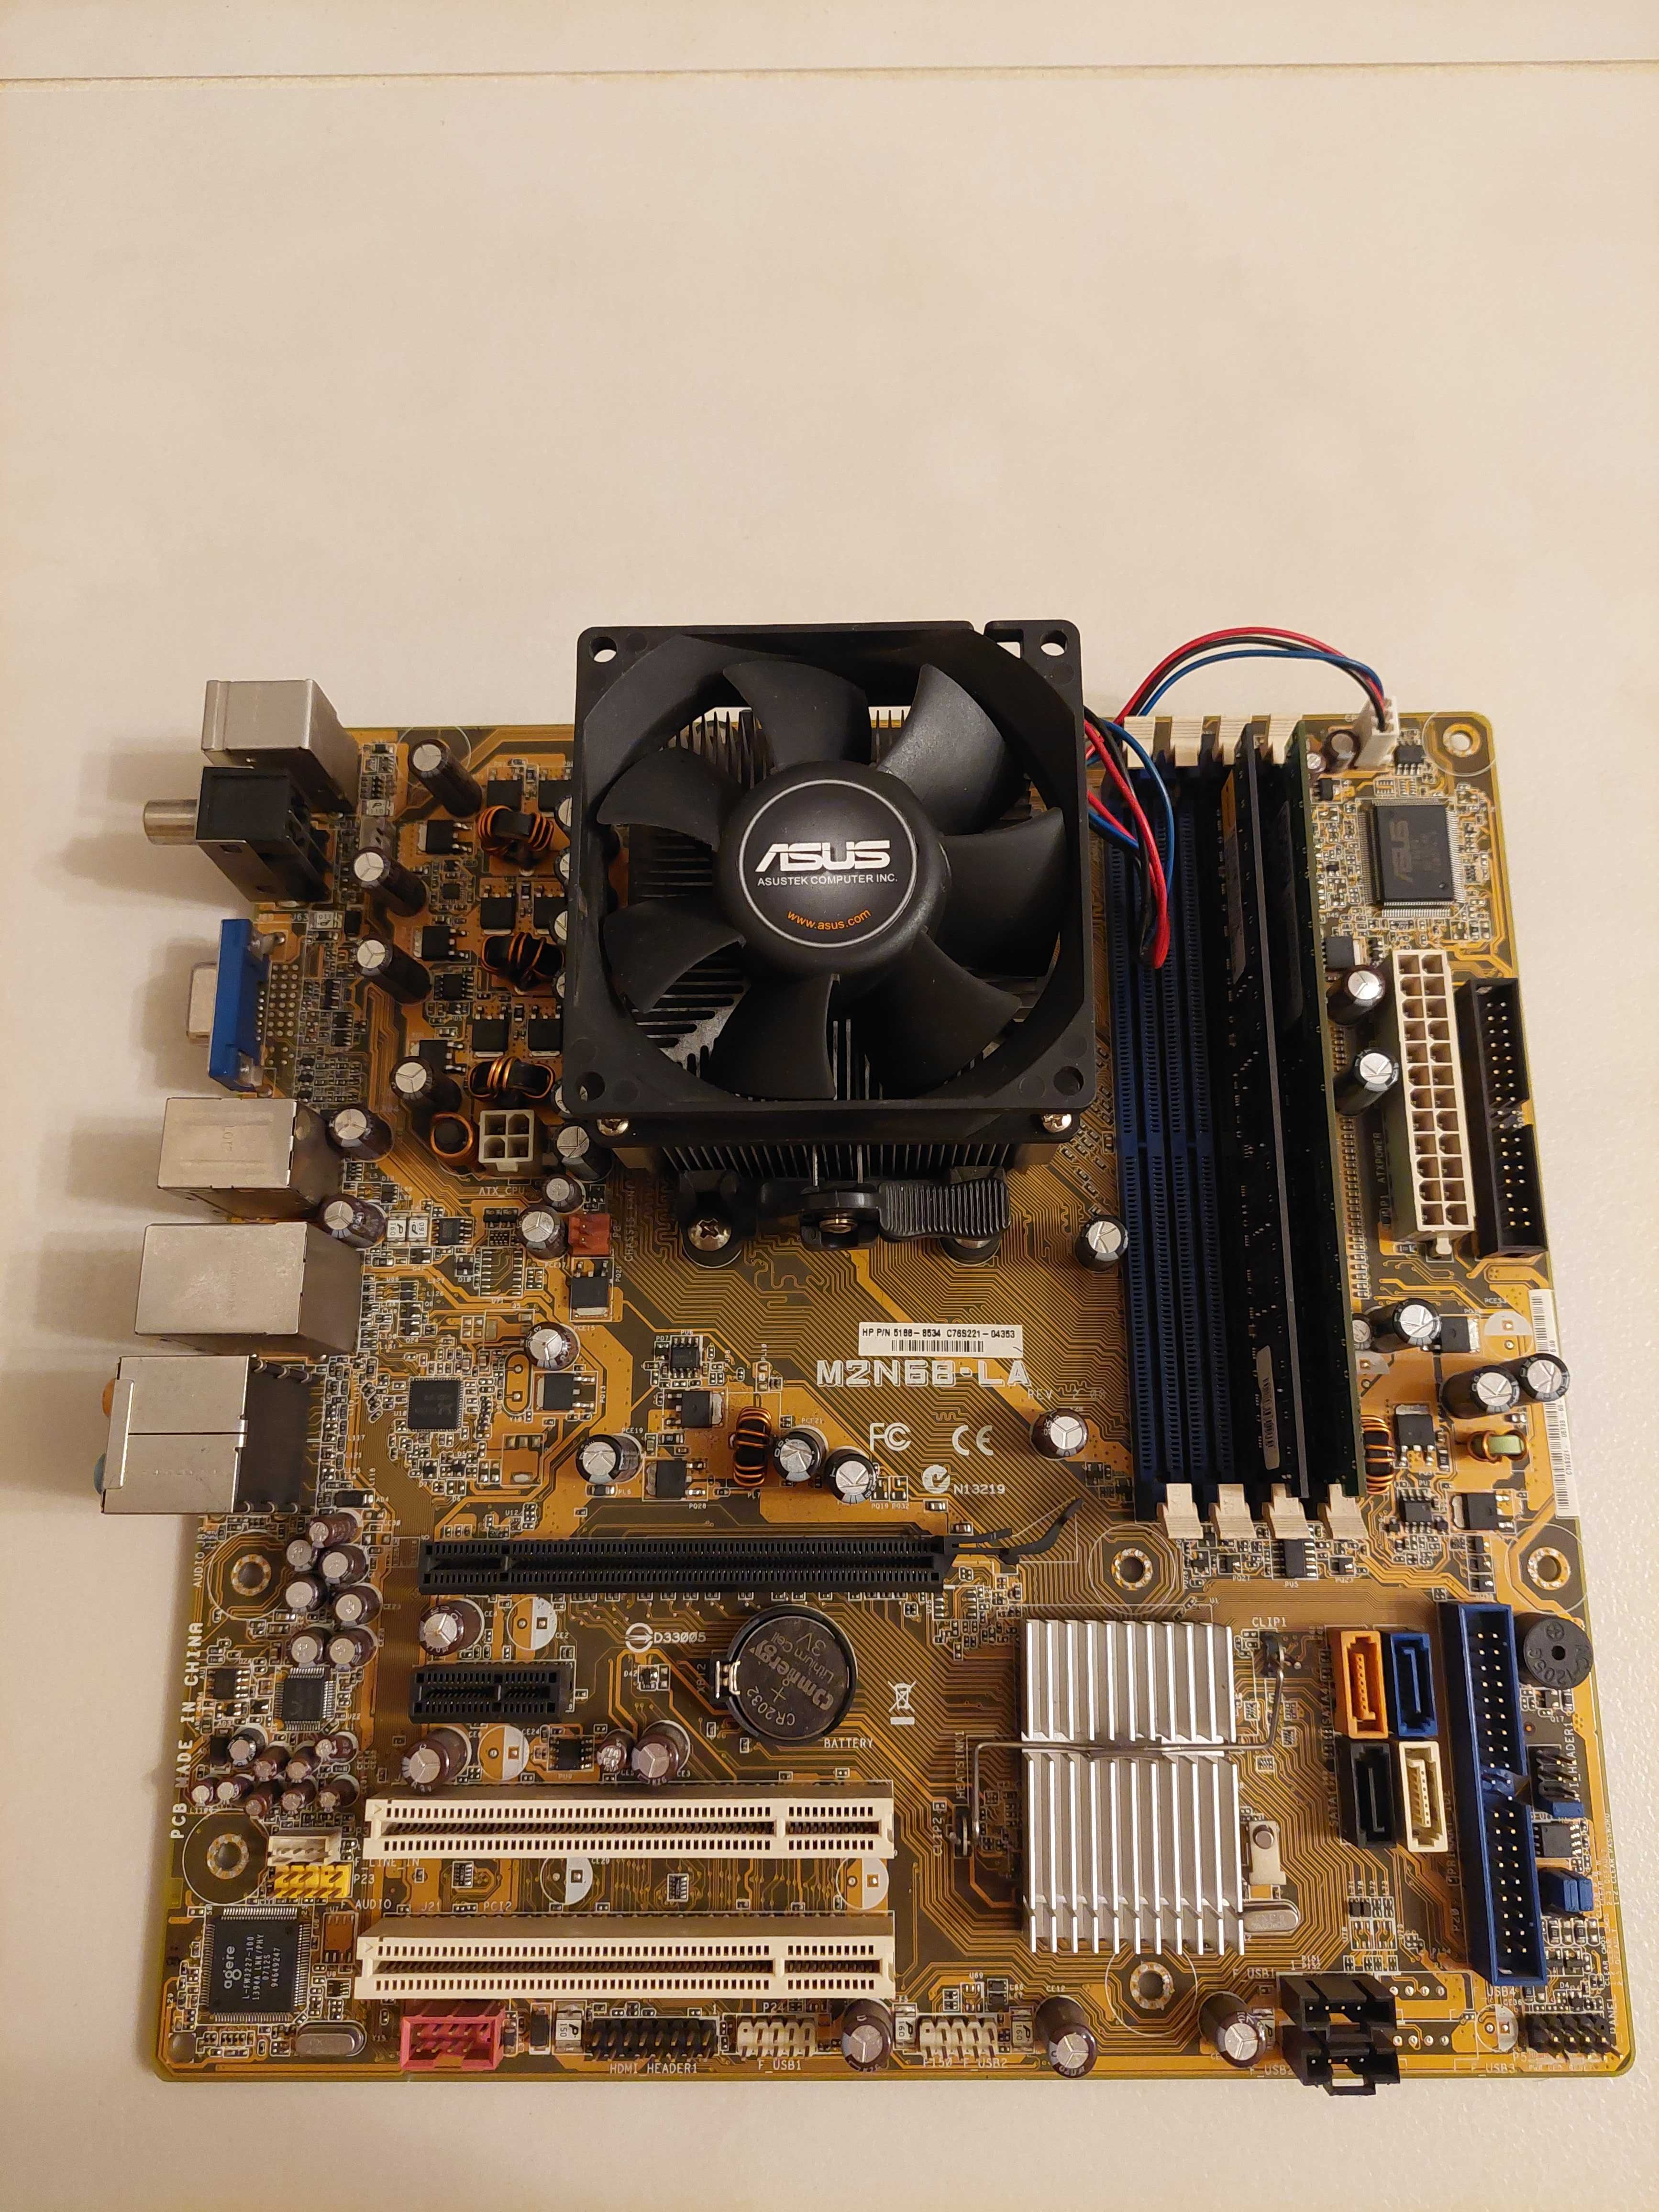 Zestaw AMD Athlon 64 X2 4400+ 2GB RAM + Płyta HP M2N68-LA + Hdd 250GB